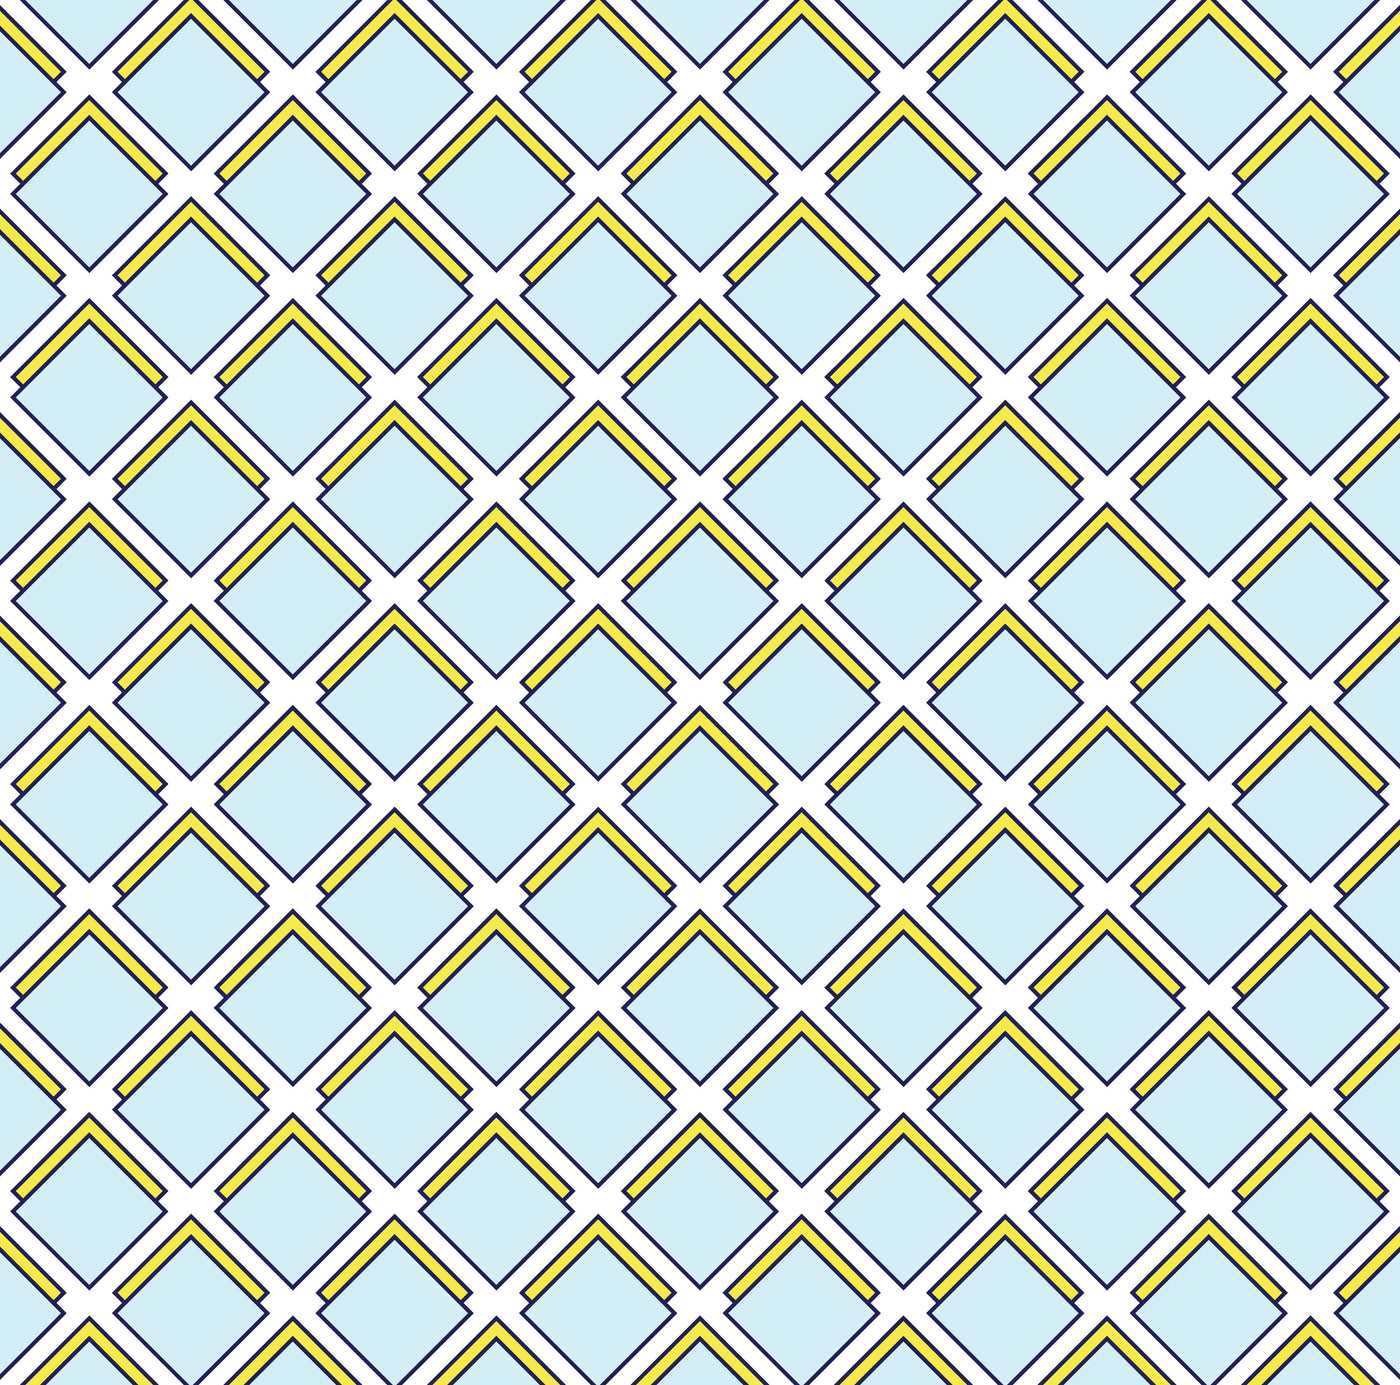 Wallpaper Double Roll / Blue Parker Wallpaper dombezalergii